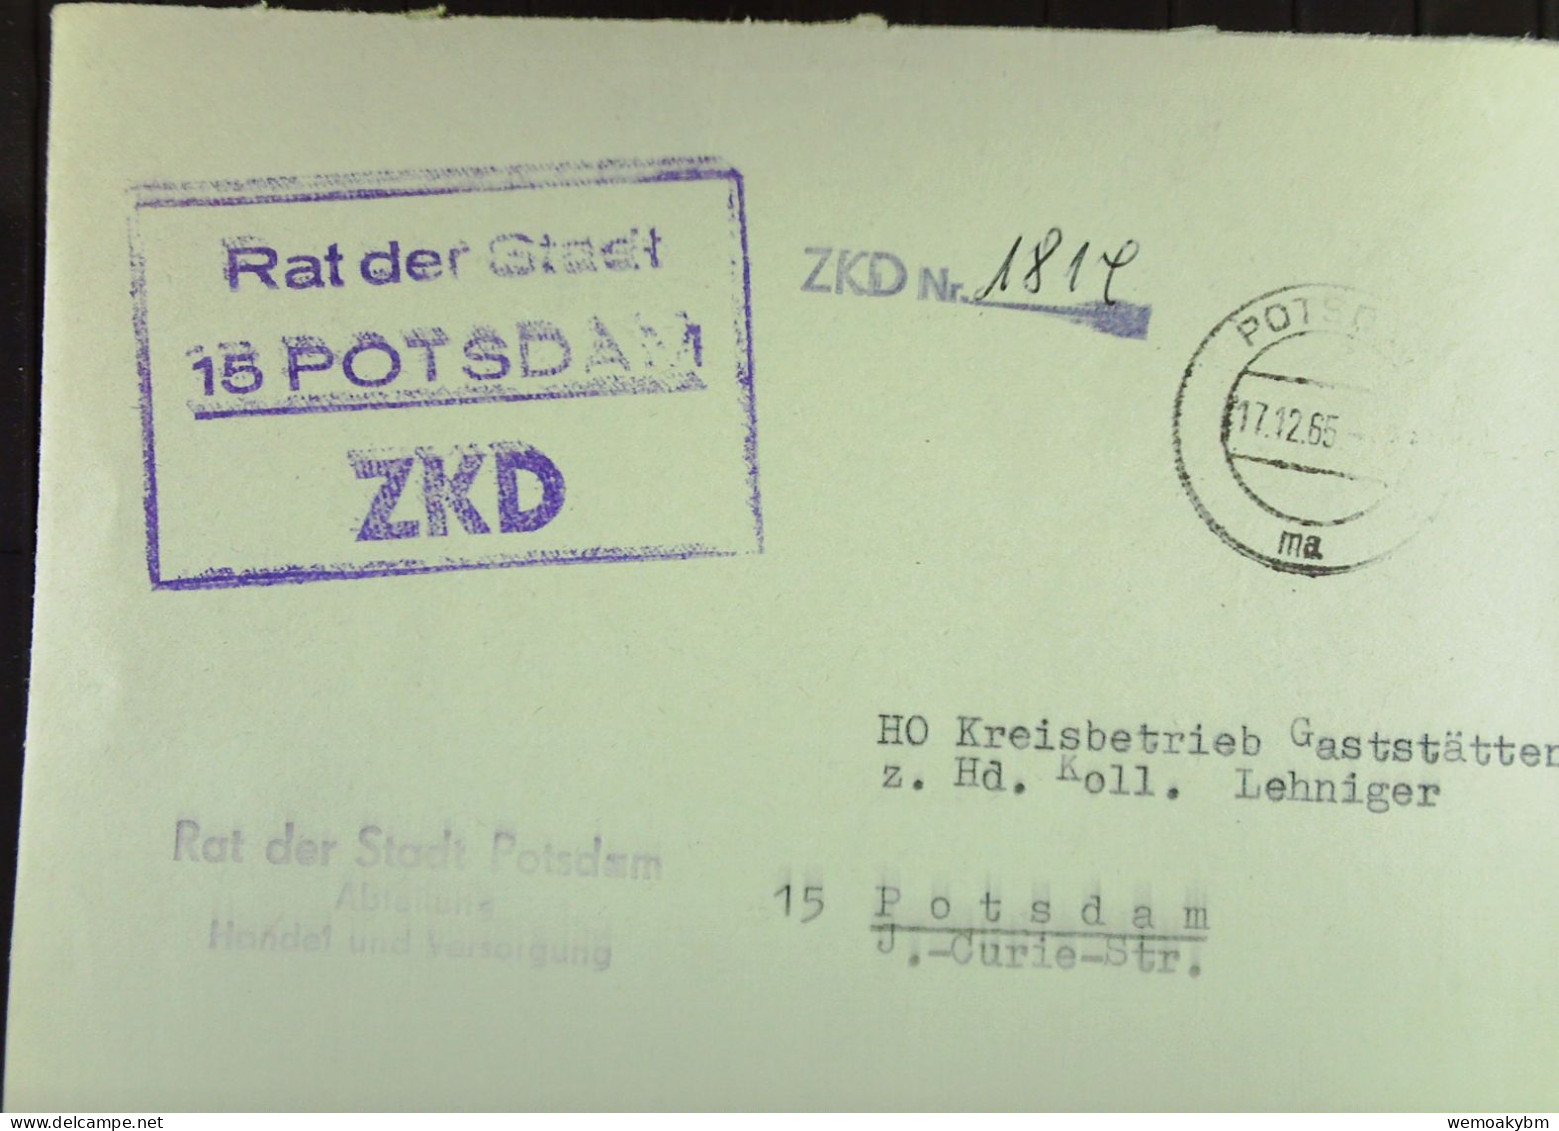 DIENST-Brief Mit ZKD-Kastenst, "Rat Der Stadt 15 POTSDAM" V17.12.65 An HO Kreisbetrieb Gaststäten Potsdam -ZKD-Nr. 1814 - Lettres & Documents